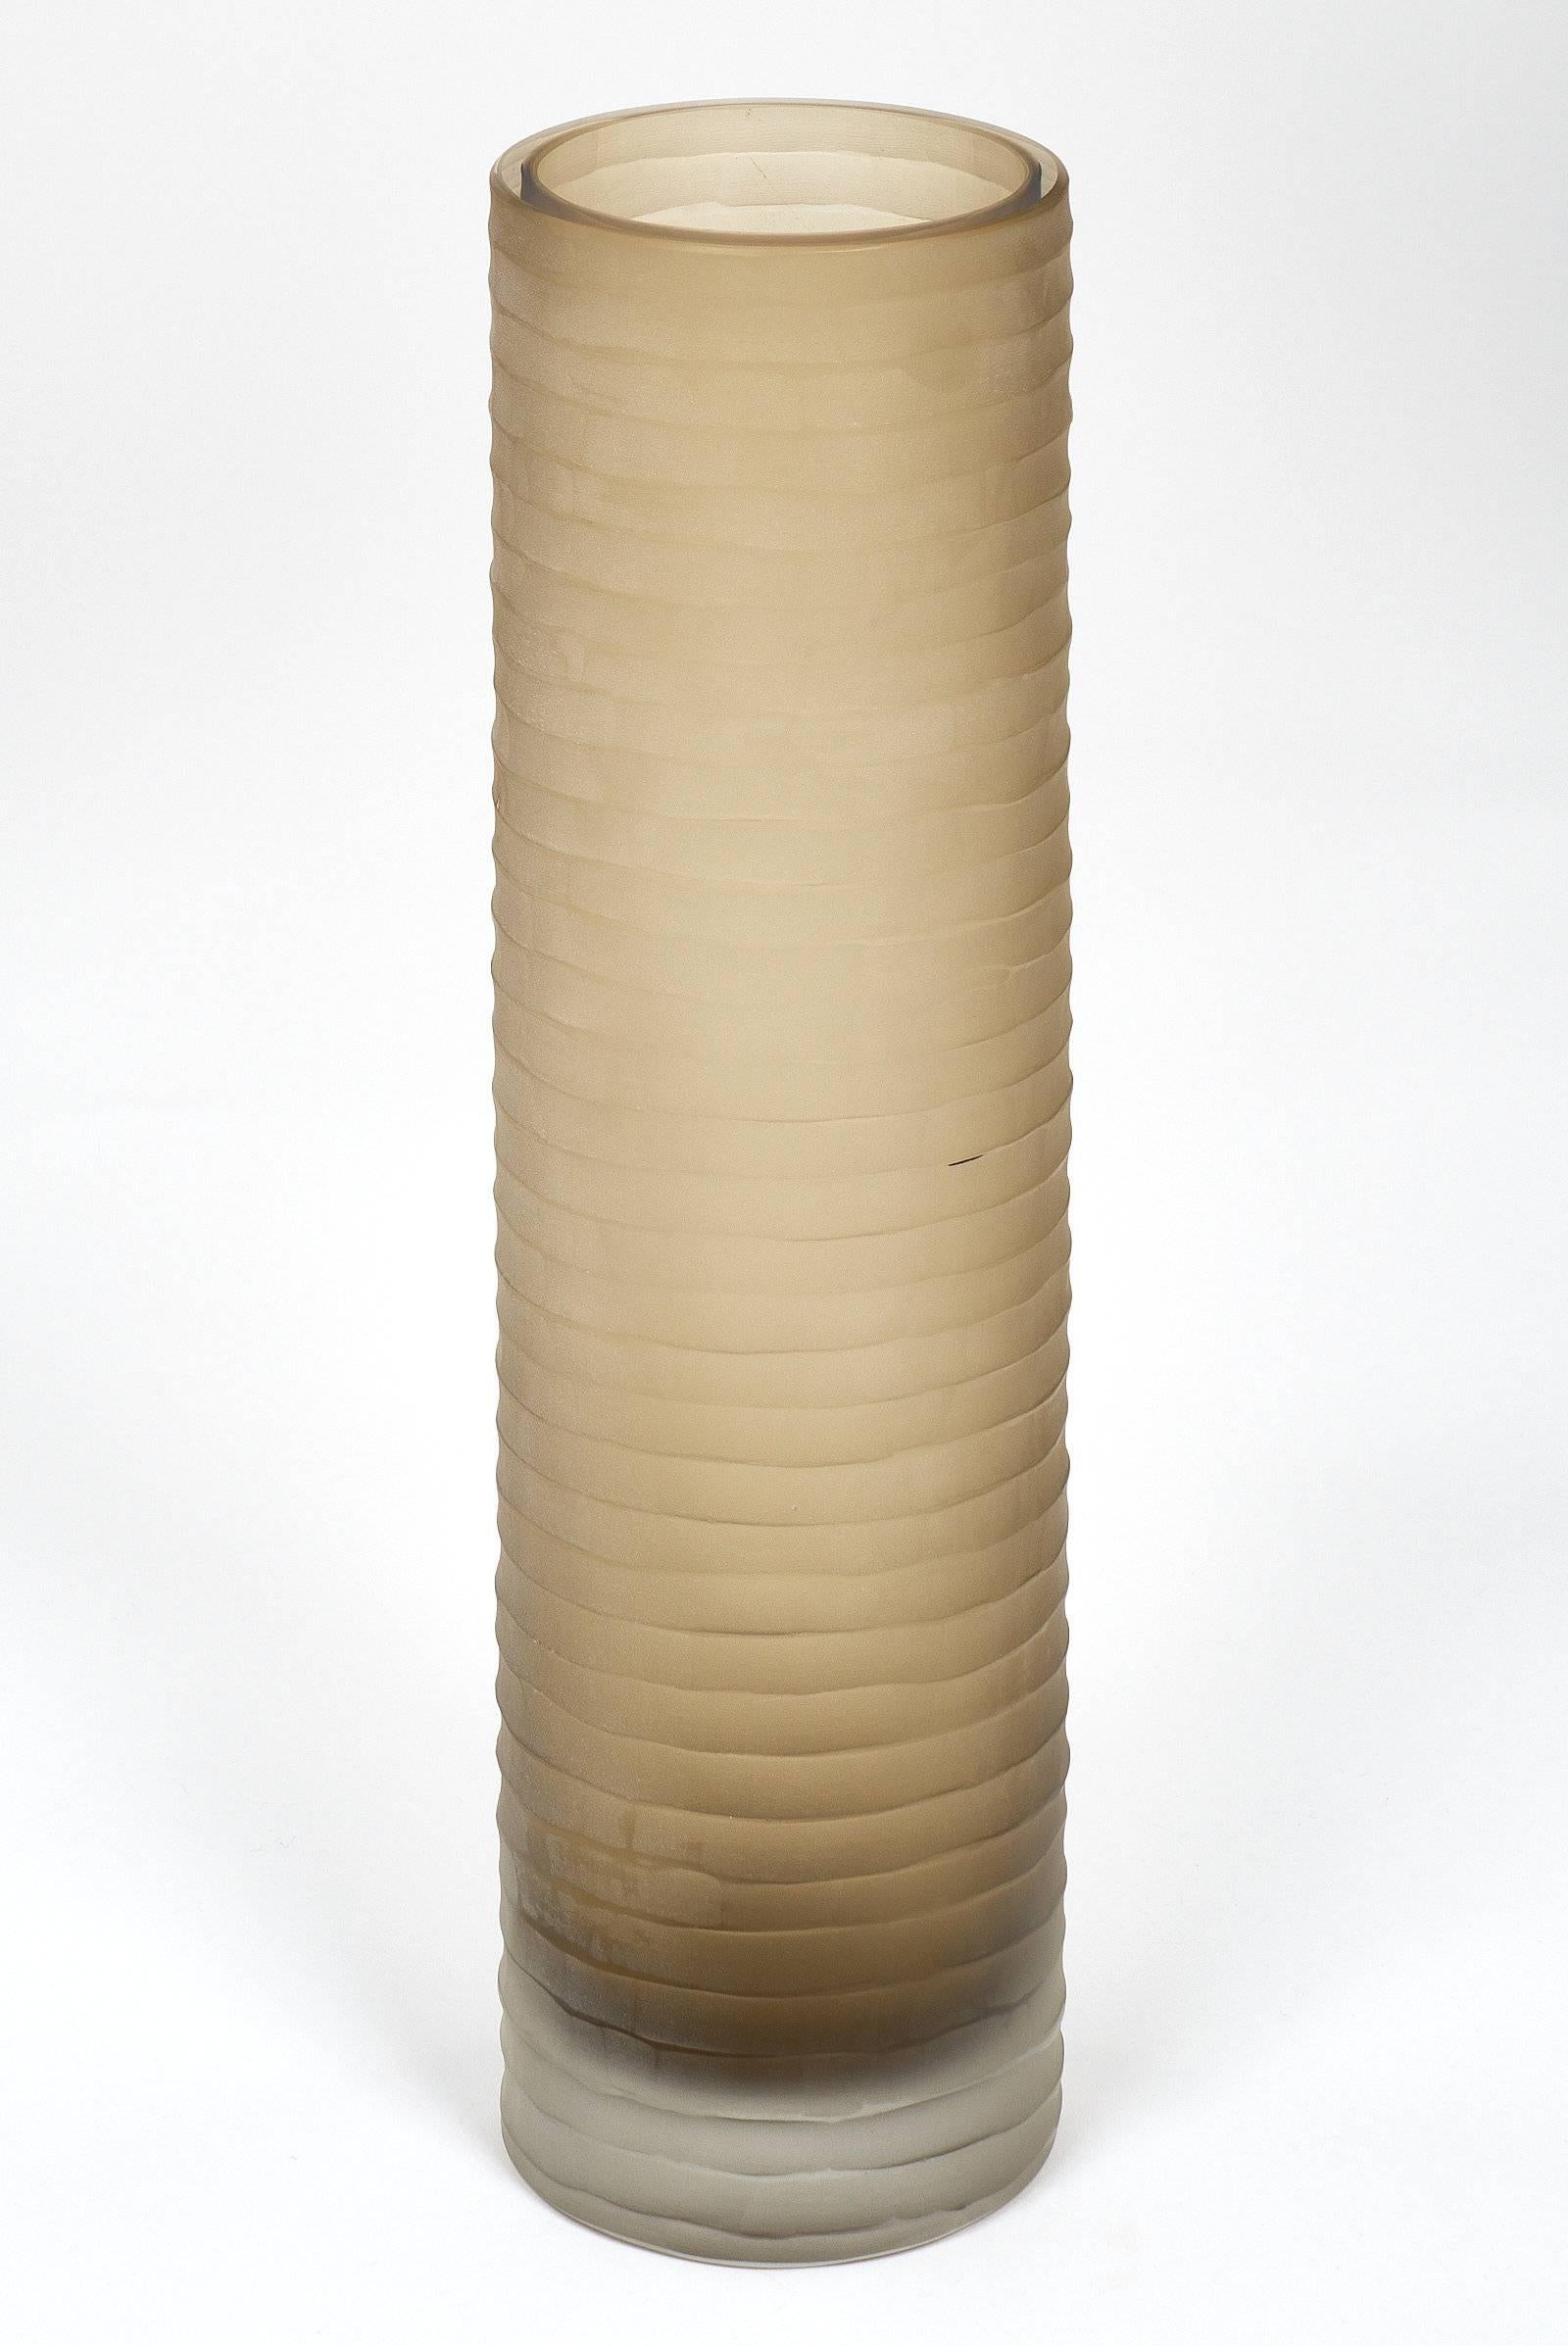 ‘Battuto’ Smoked Murano Glass Vases For Sale 1